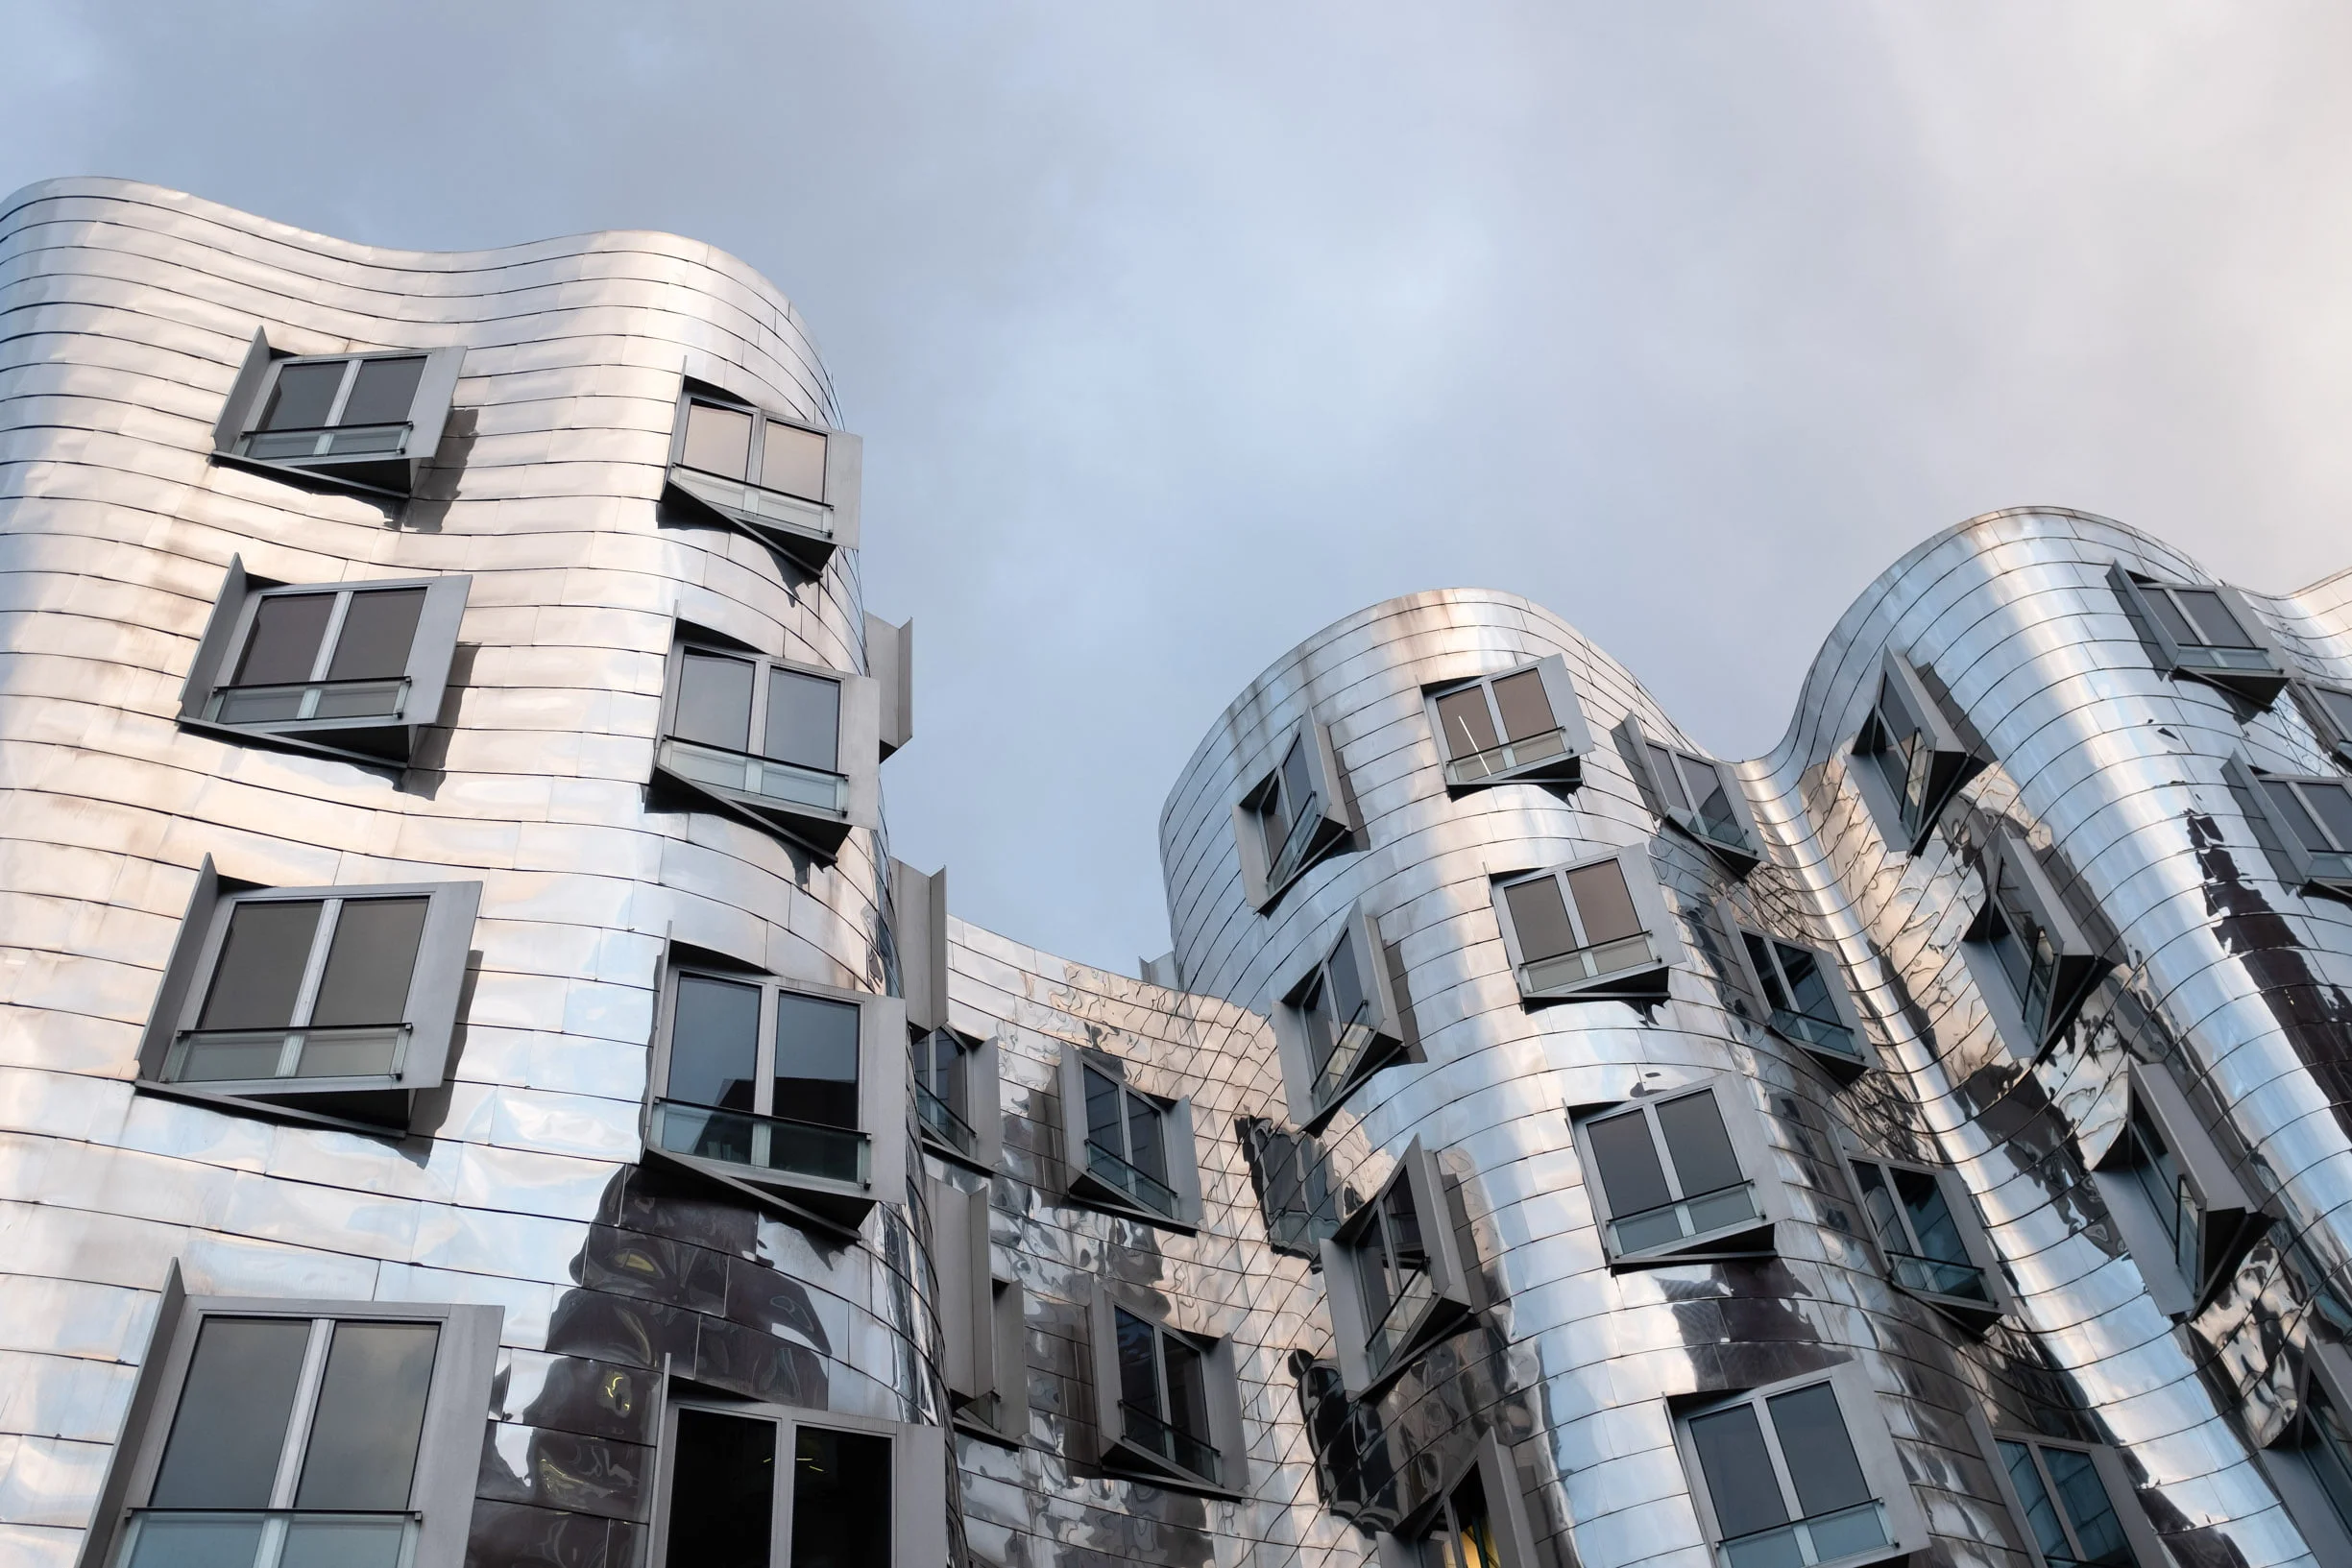 Blick von unten auf Frank Gehry mittleres Gebäude in Düsseldorf. Verspiegelte Fassade und dunkler Himmel. Geschwungene, verchromte Linien.